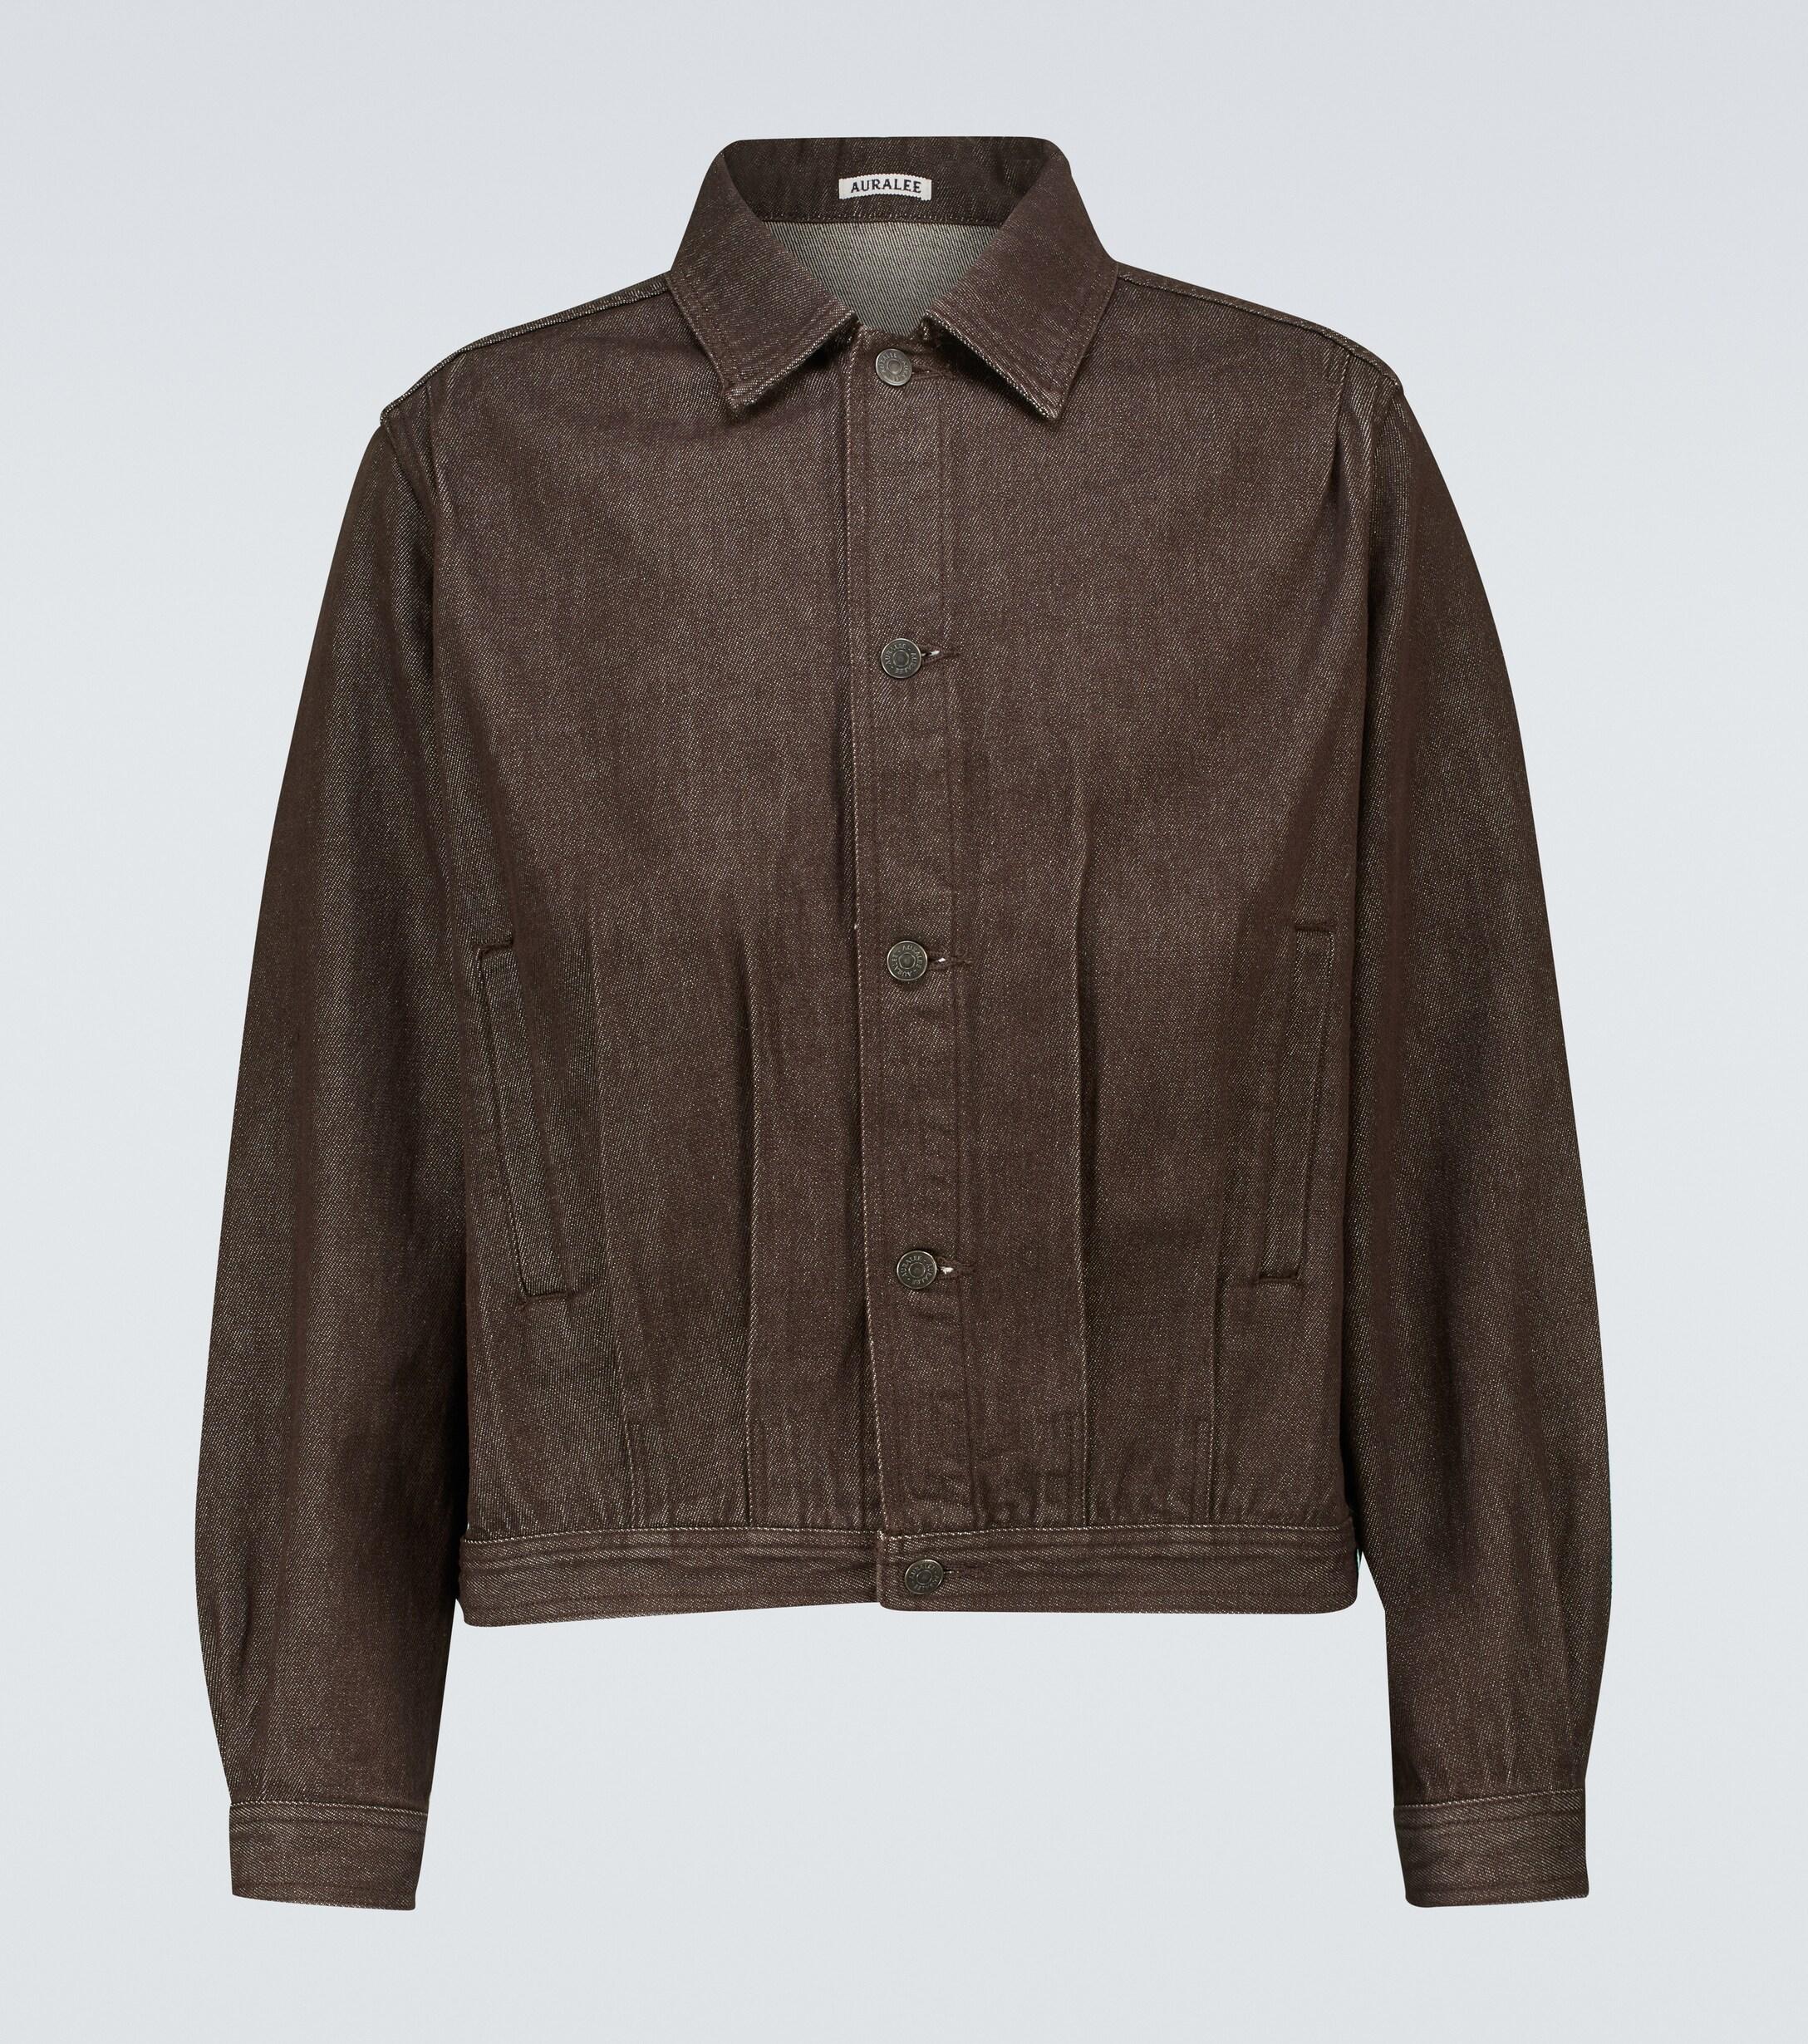 AURALEE Cotton Hard Twist Denim Blouson Jacket in Brown for Men - Lyst